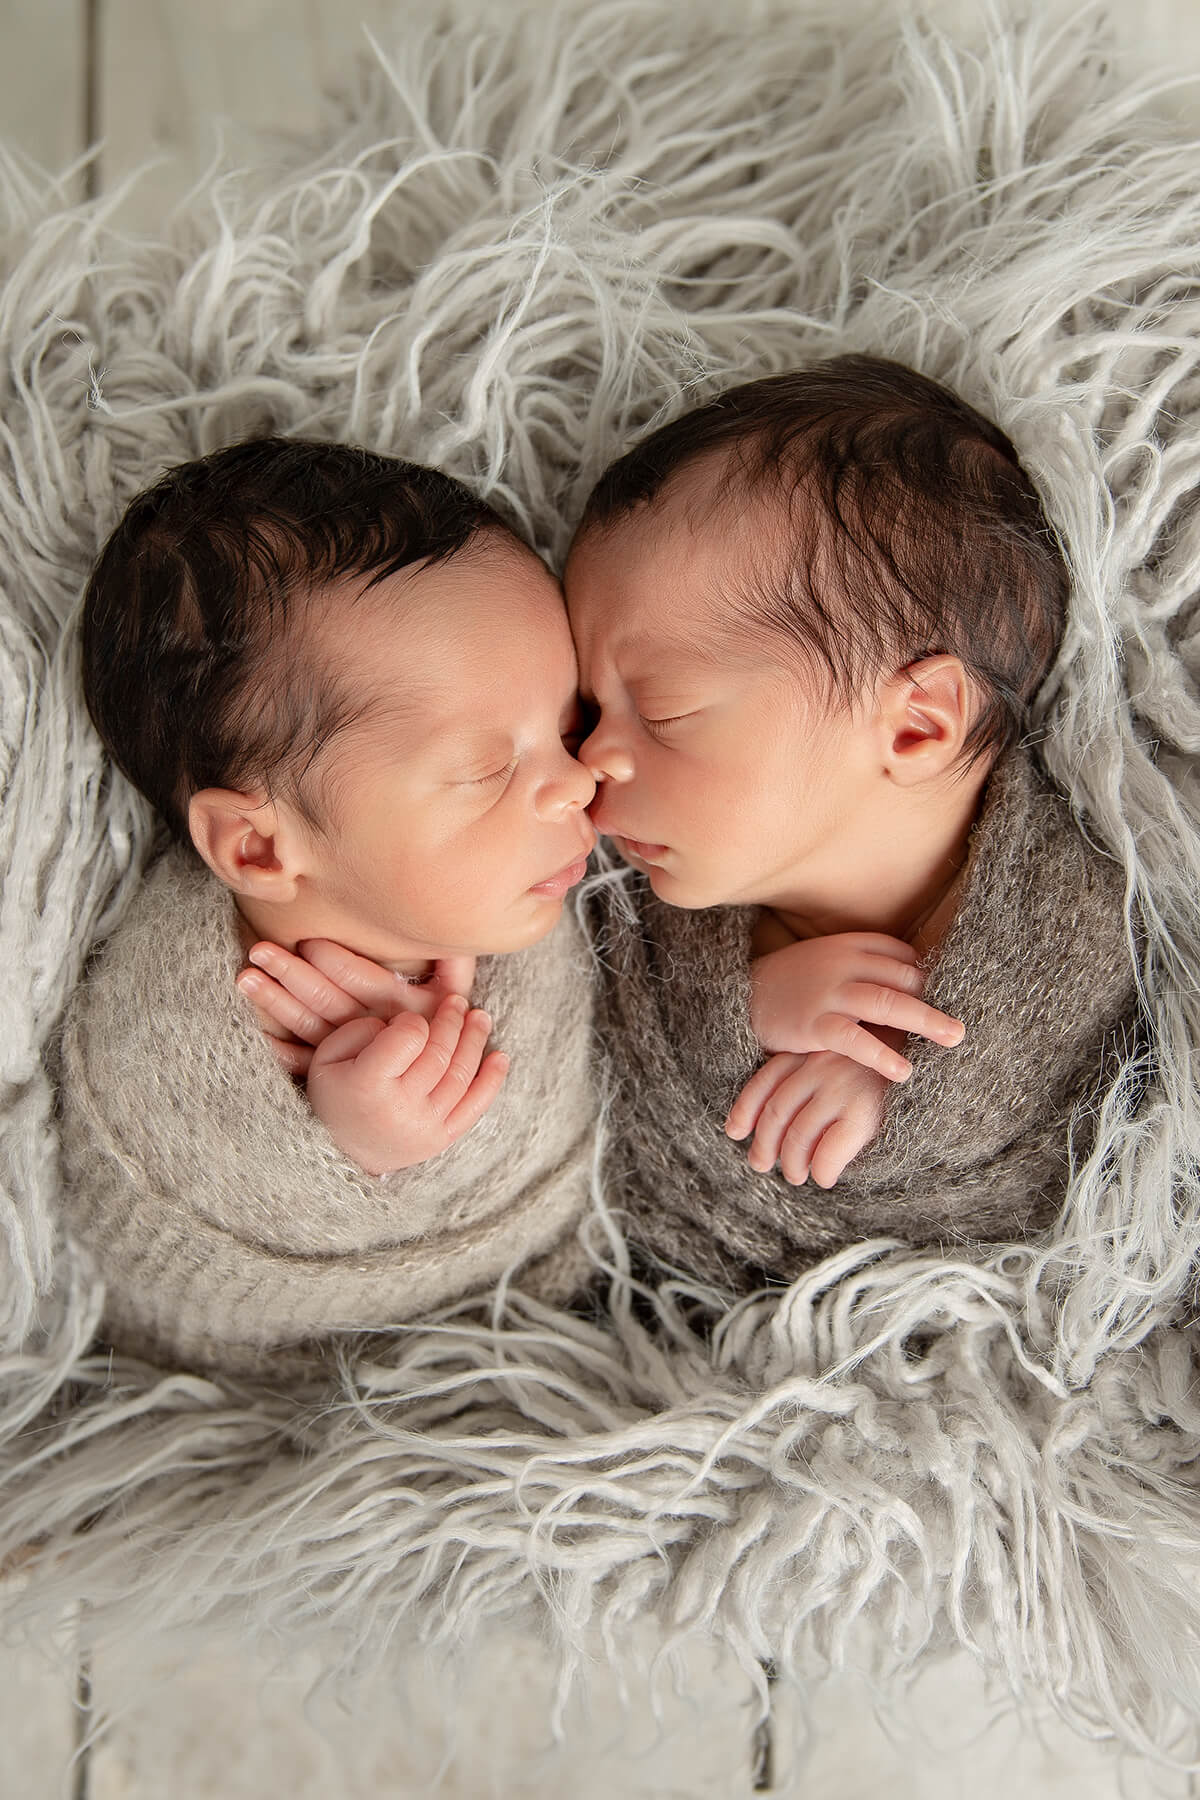 Deux jumeaux nouveau-nés enveloppés dans une couverture.